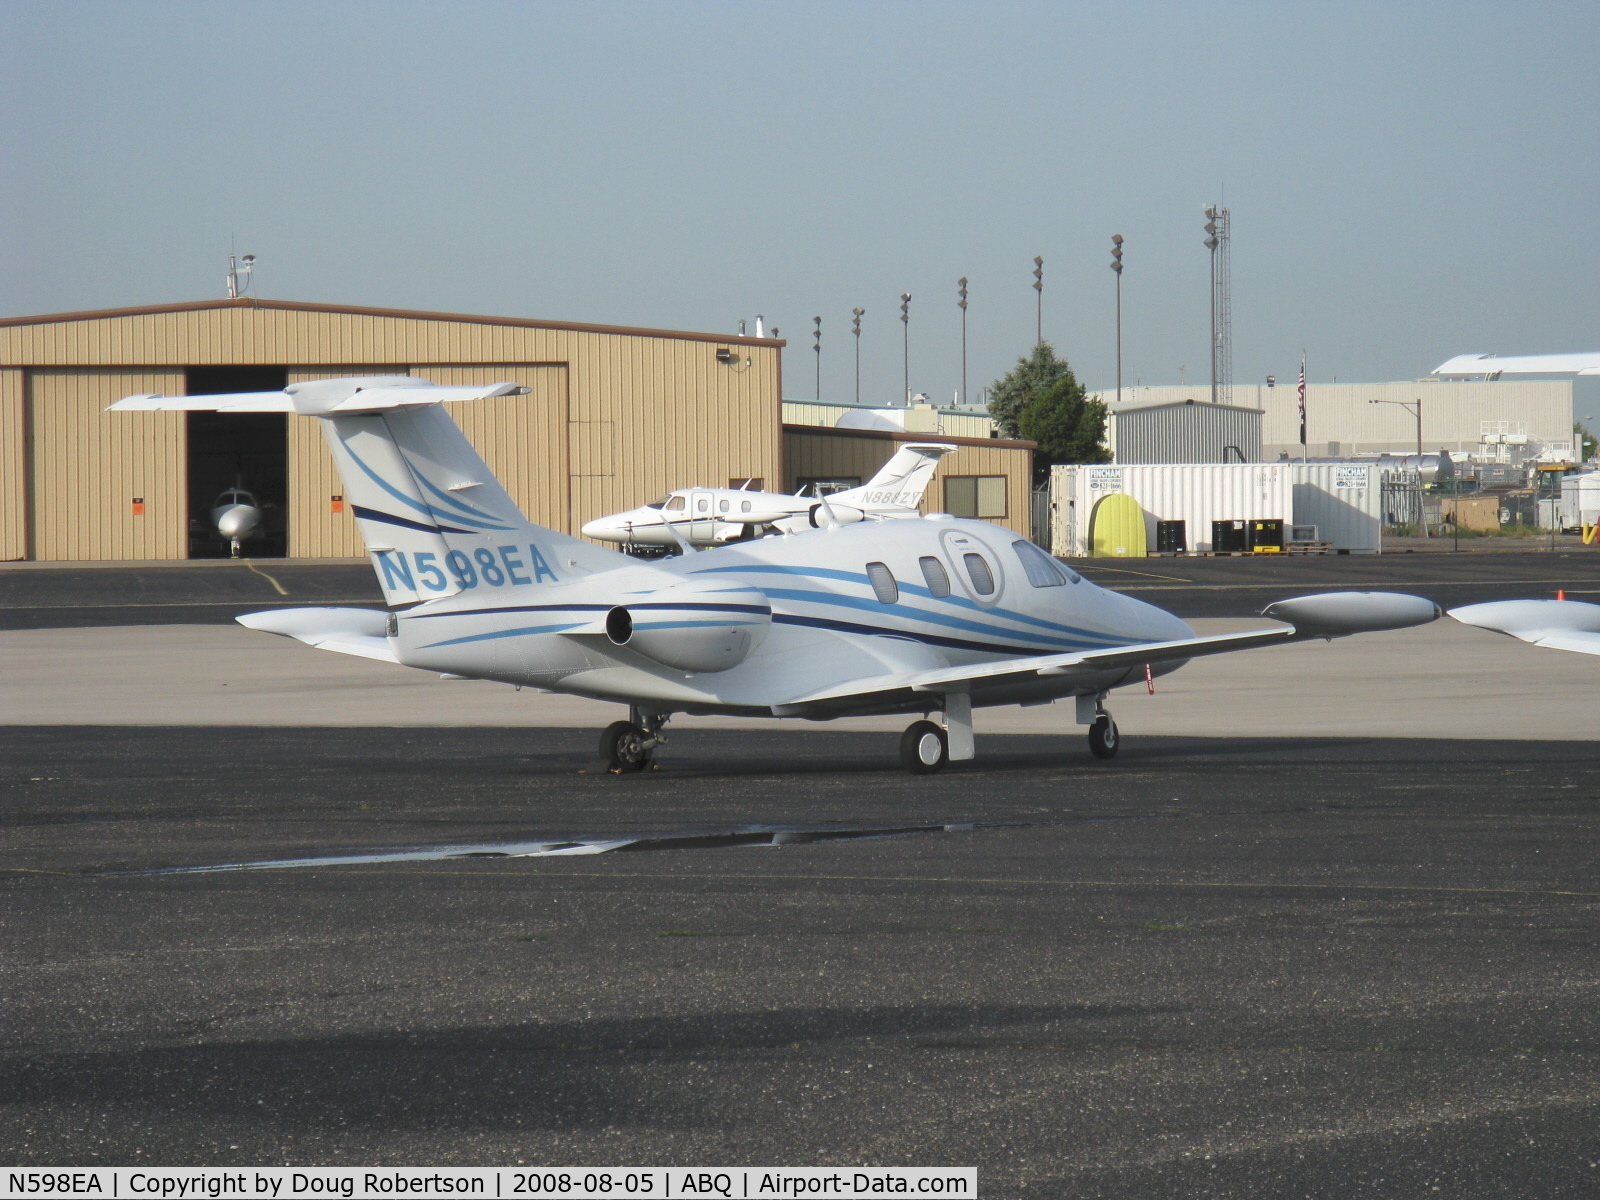 N598EA, 2007 Eclipse Aviation Corp EA500 C/N 000098, 2008 Eclipse Aviation EA500 Jet, two P&W(C)PW610F-A Turbofans 900 lb st each.